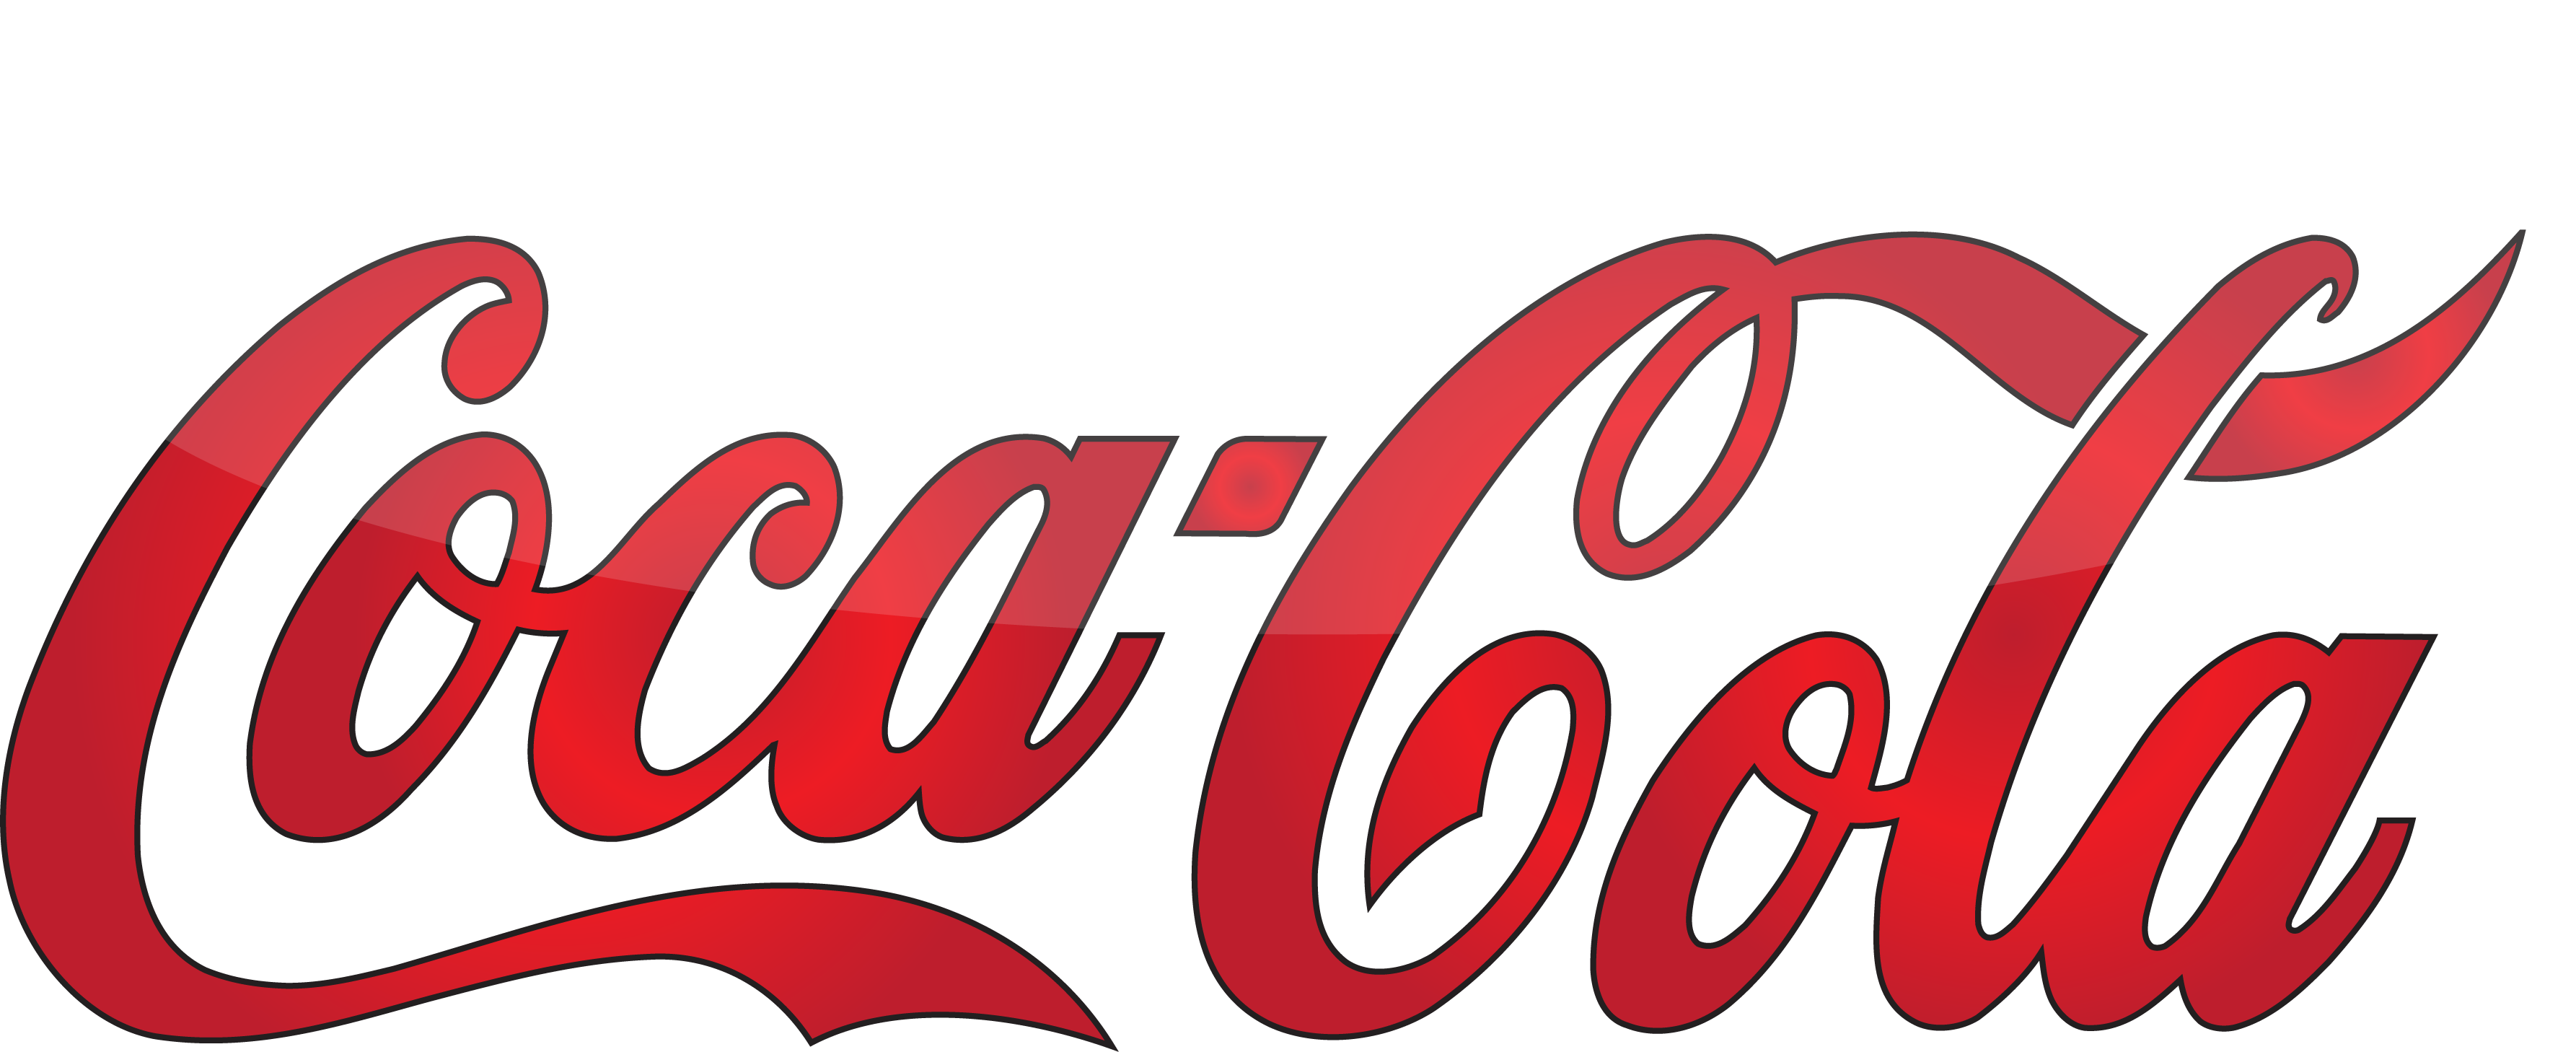 Coca cola logotipo PNG imagem